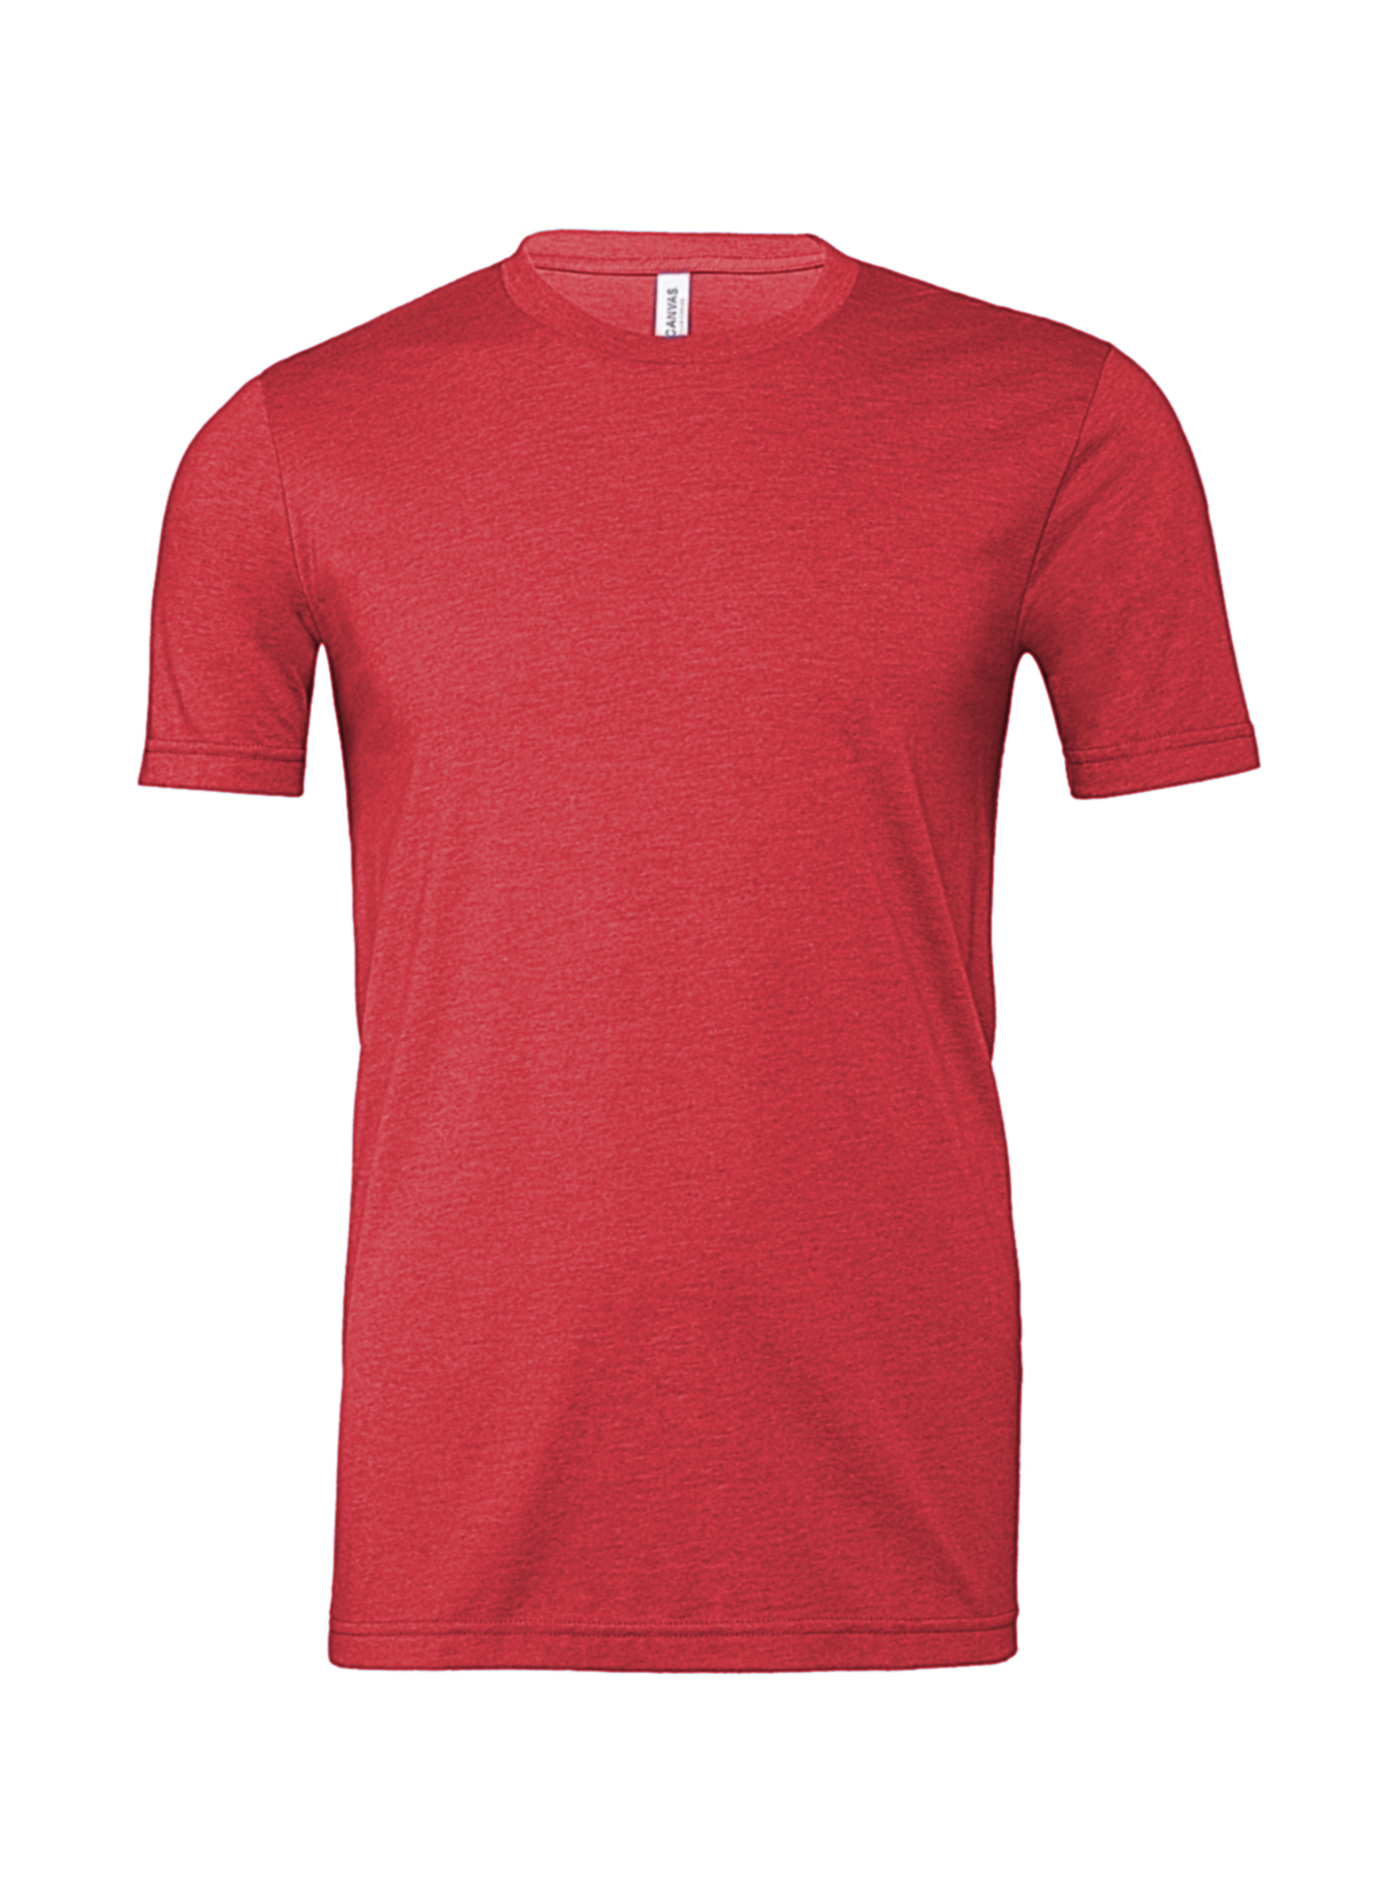 Pánské tričko Jersey Heather - Červená L